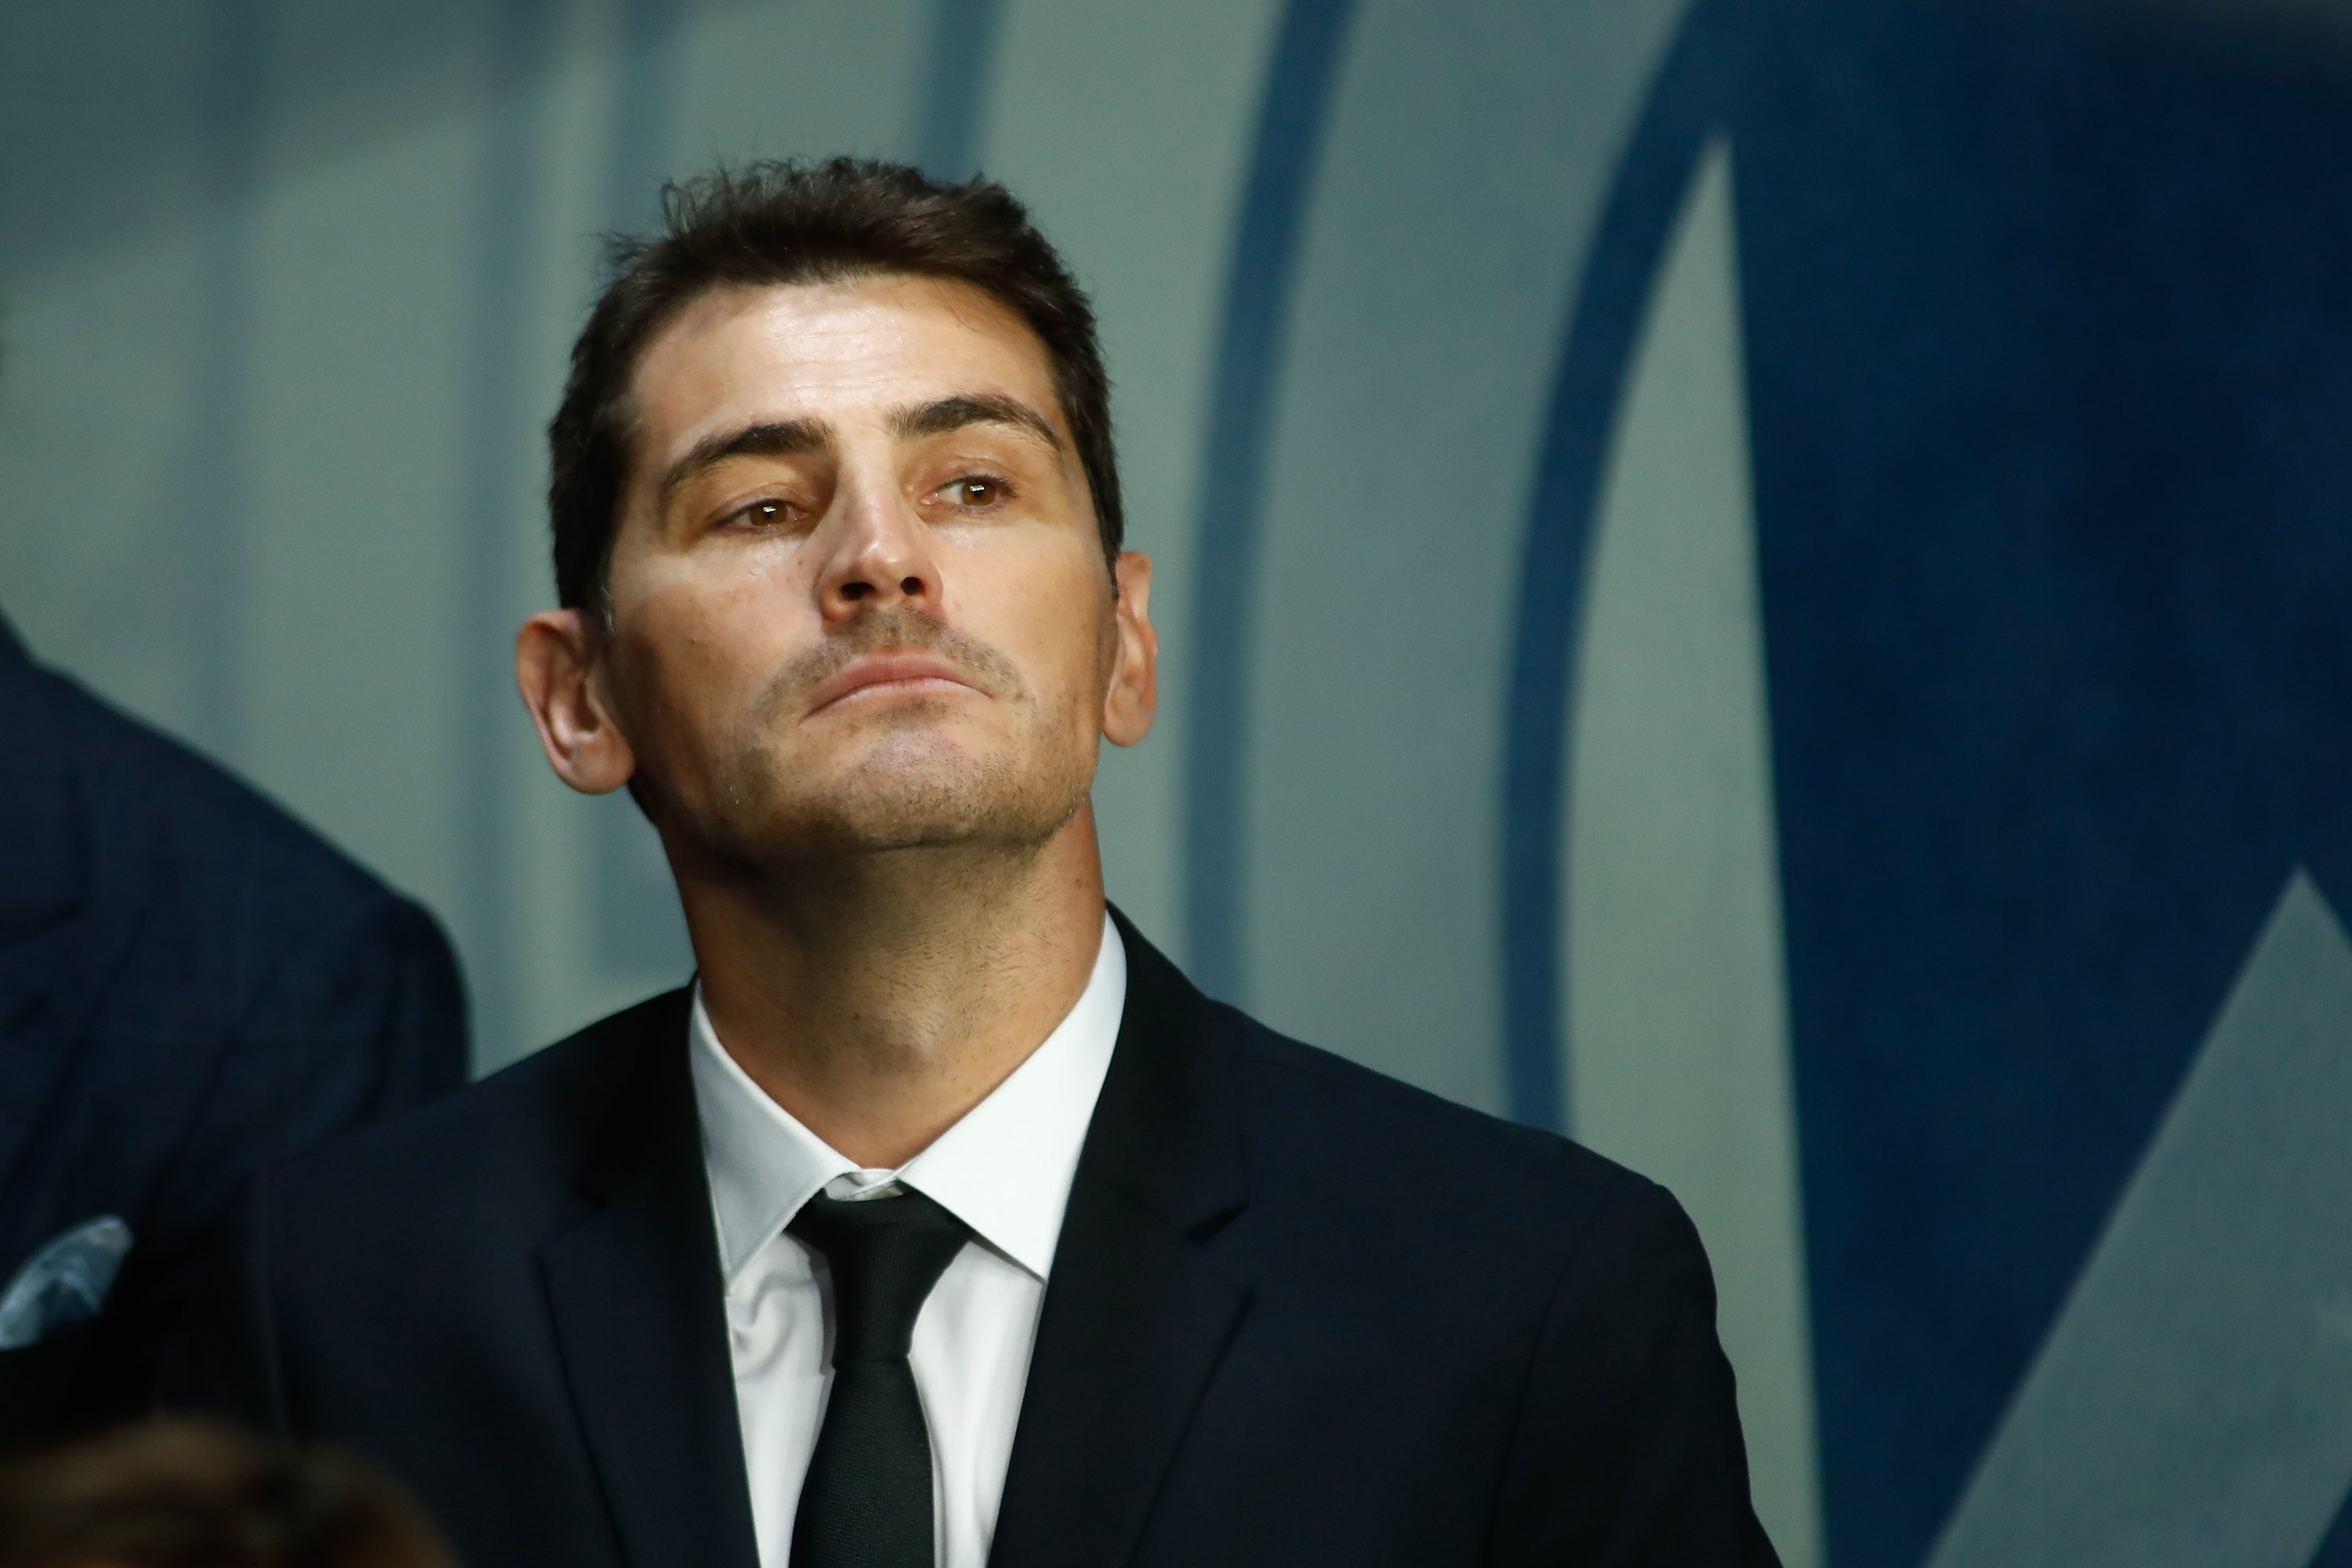 El rumor sobre Iker Casillas que deixa de ser rumor perquè hi ha una prova que ho confirma